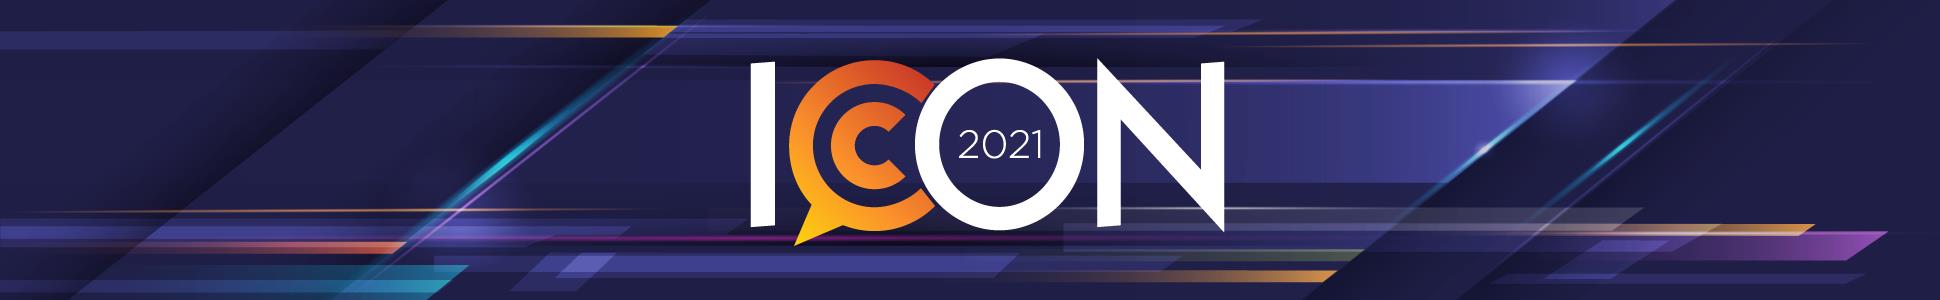 ICON 2021 PRSA Conference